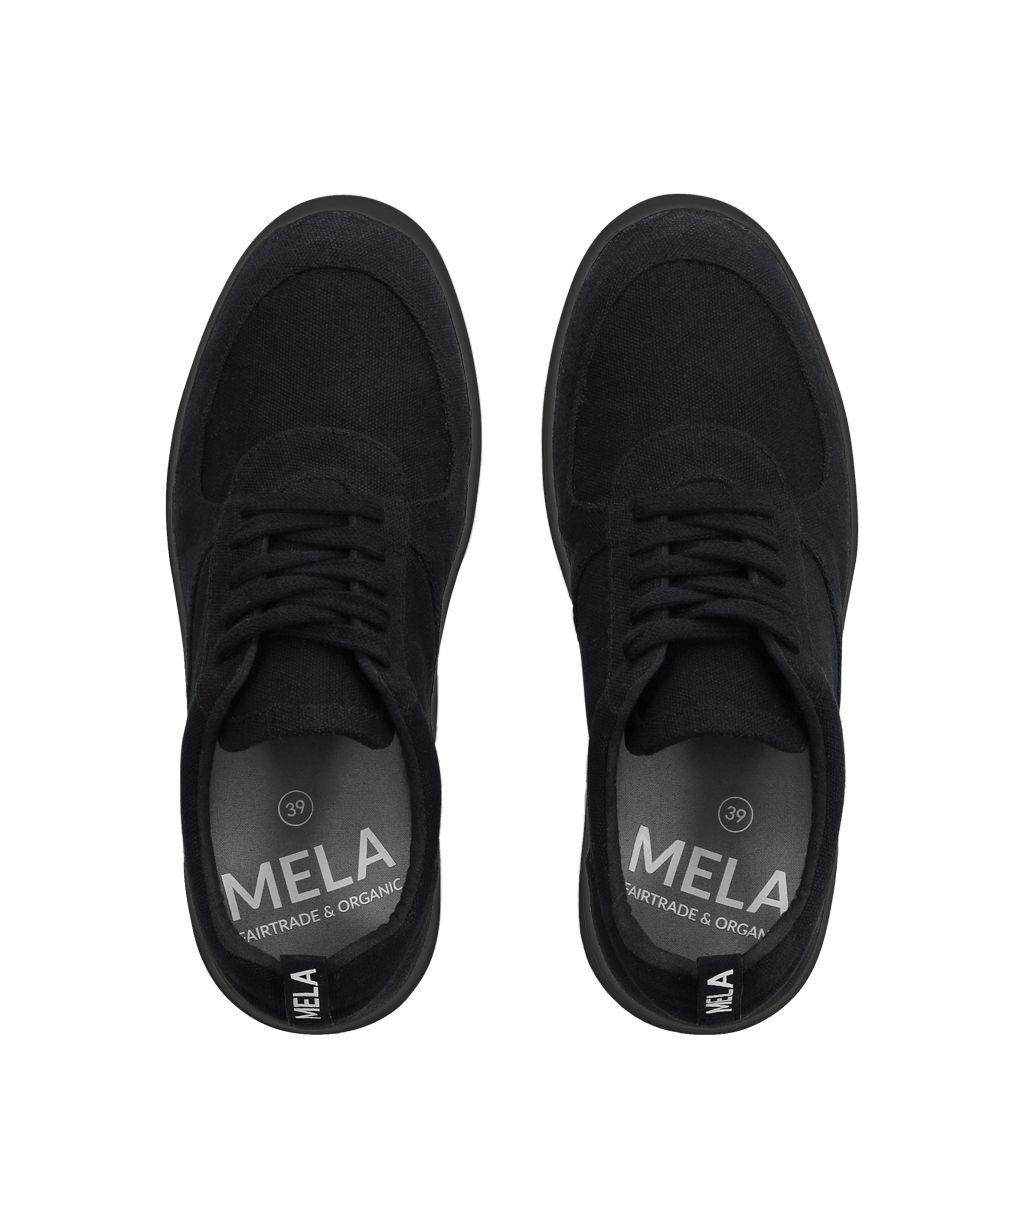 Mela Sneaker Herren black/black 45